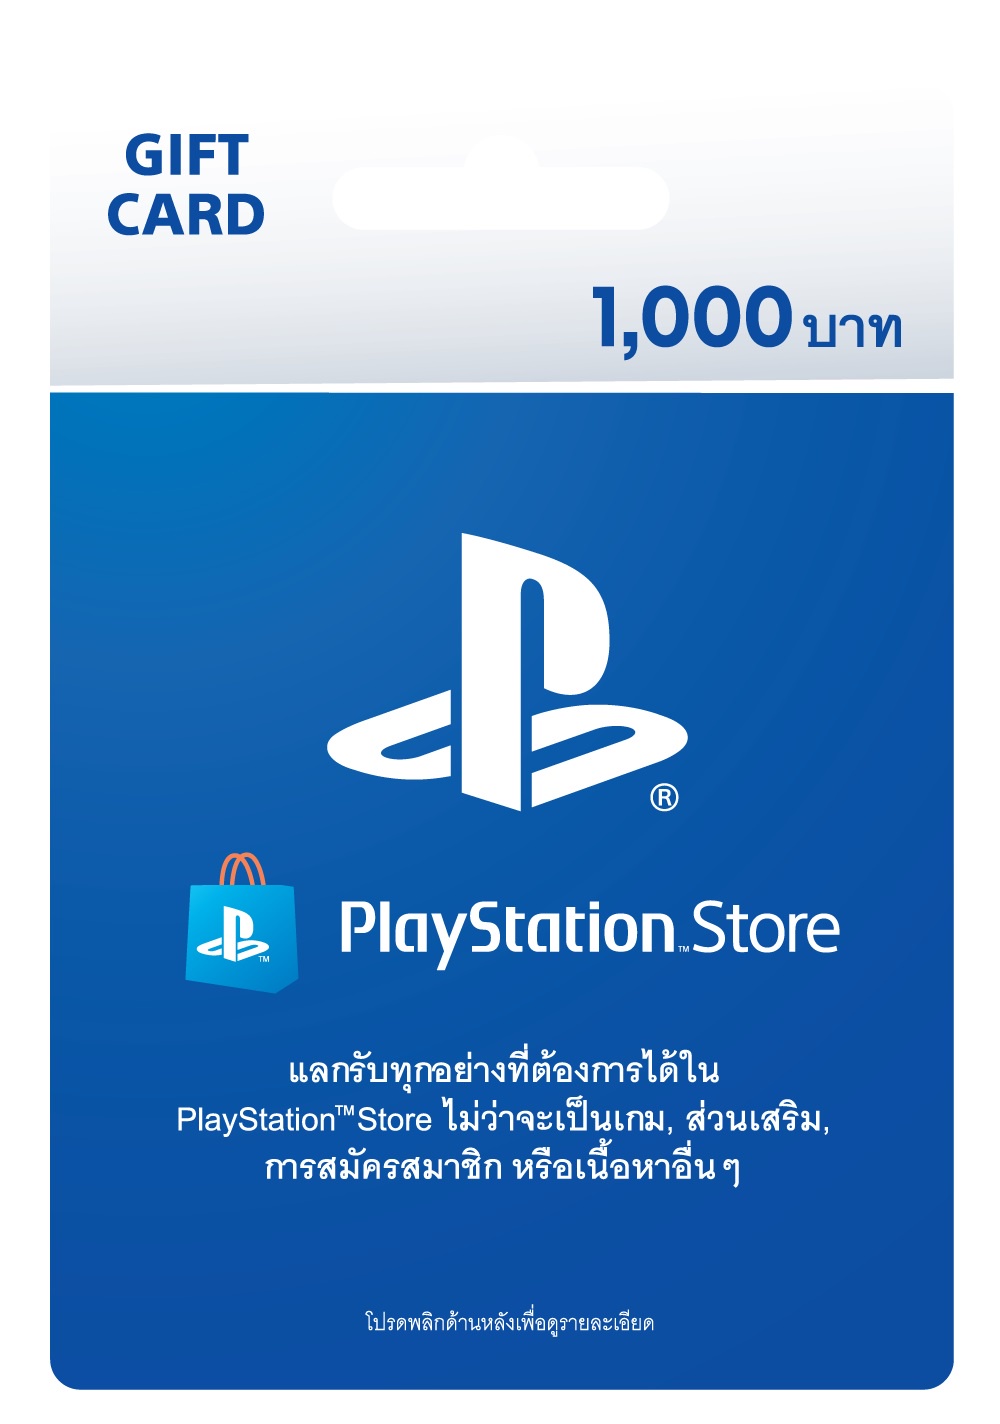 คอมเซเว่น ตอบรับดีมานด์ตลาดเกมมิ่งไทย ส่งบัตรของขวัญ PlayStation(R) วางจำหน่ายร้าน BaNANA และร้านค้าในเครือ ทั่วประเทศ